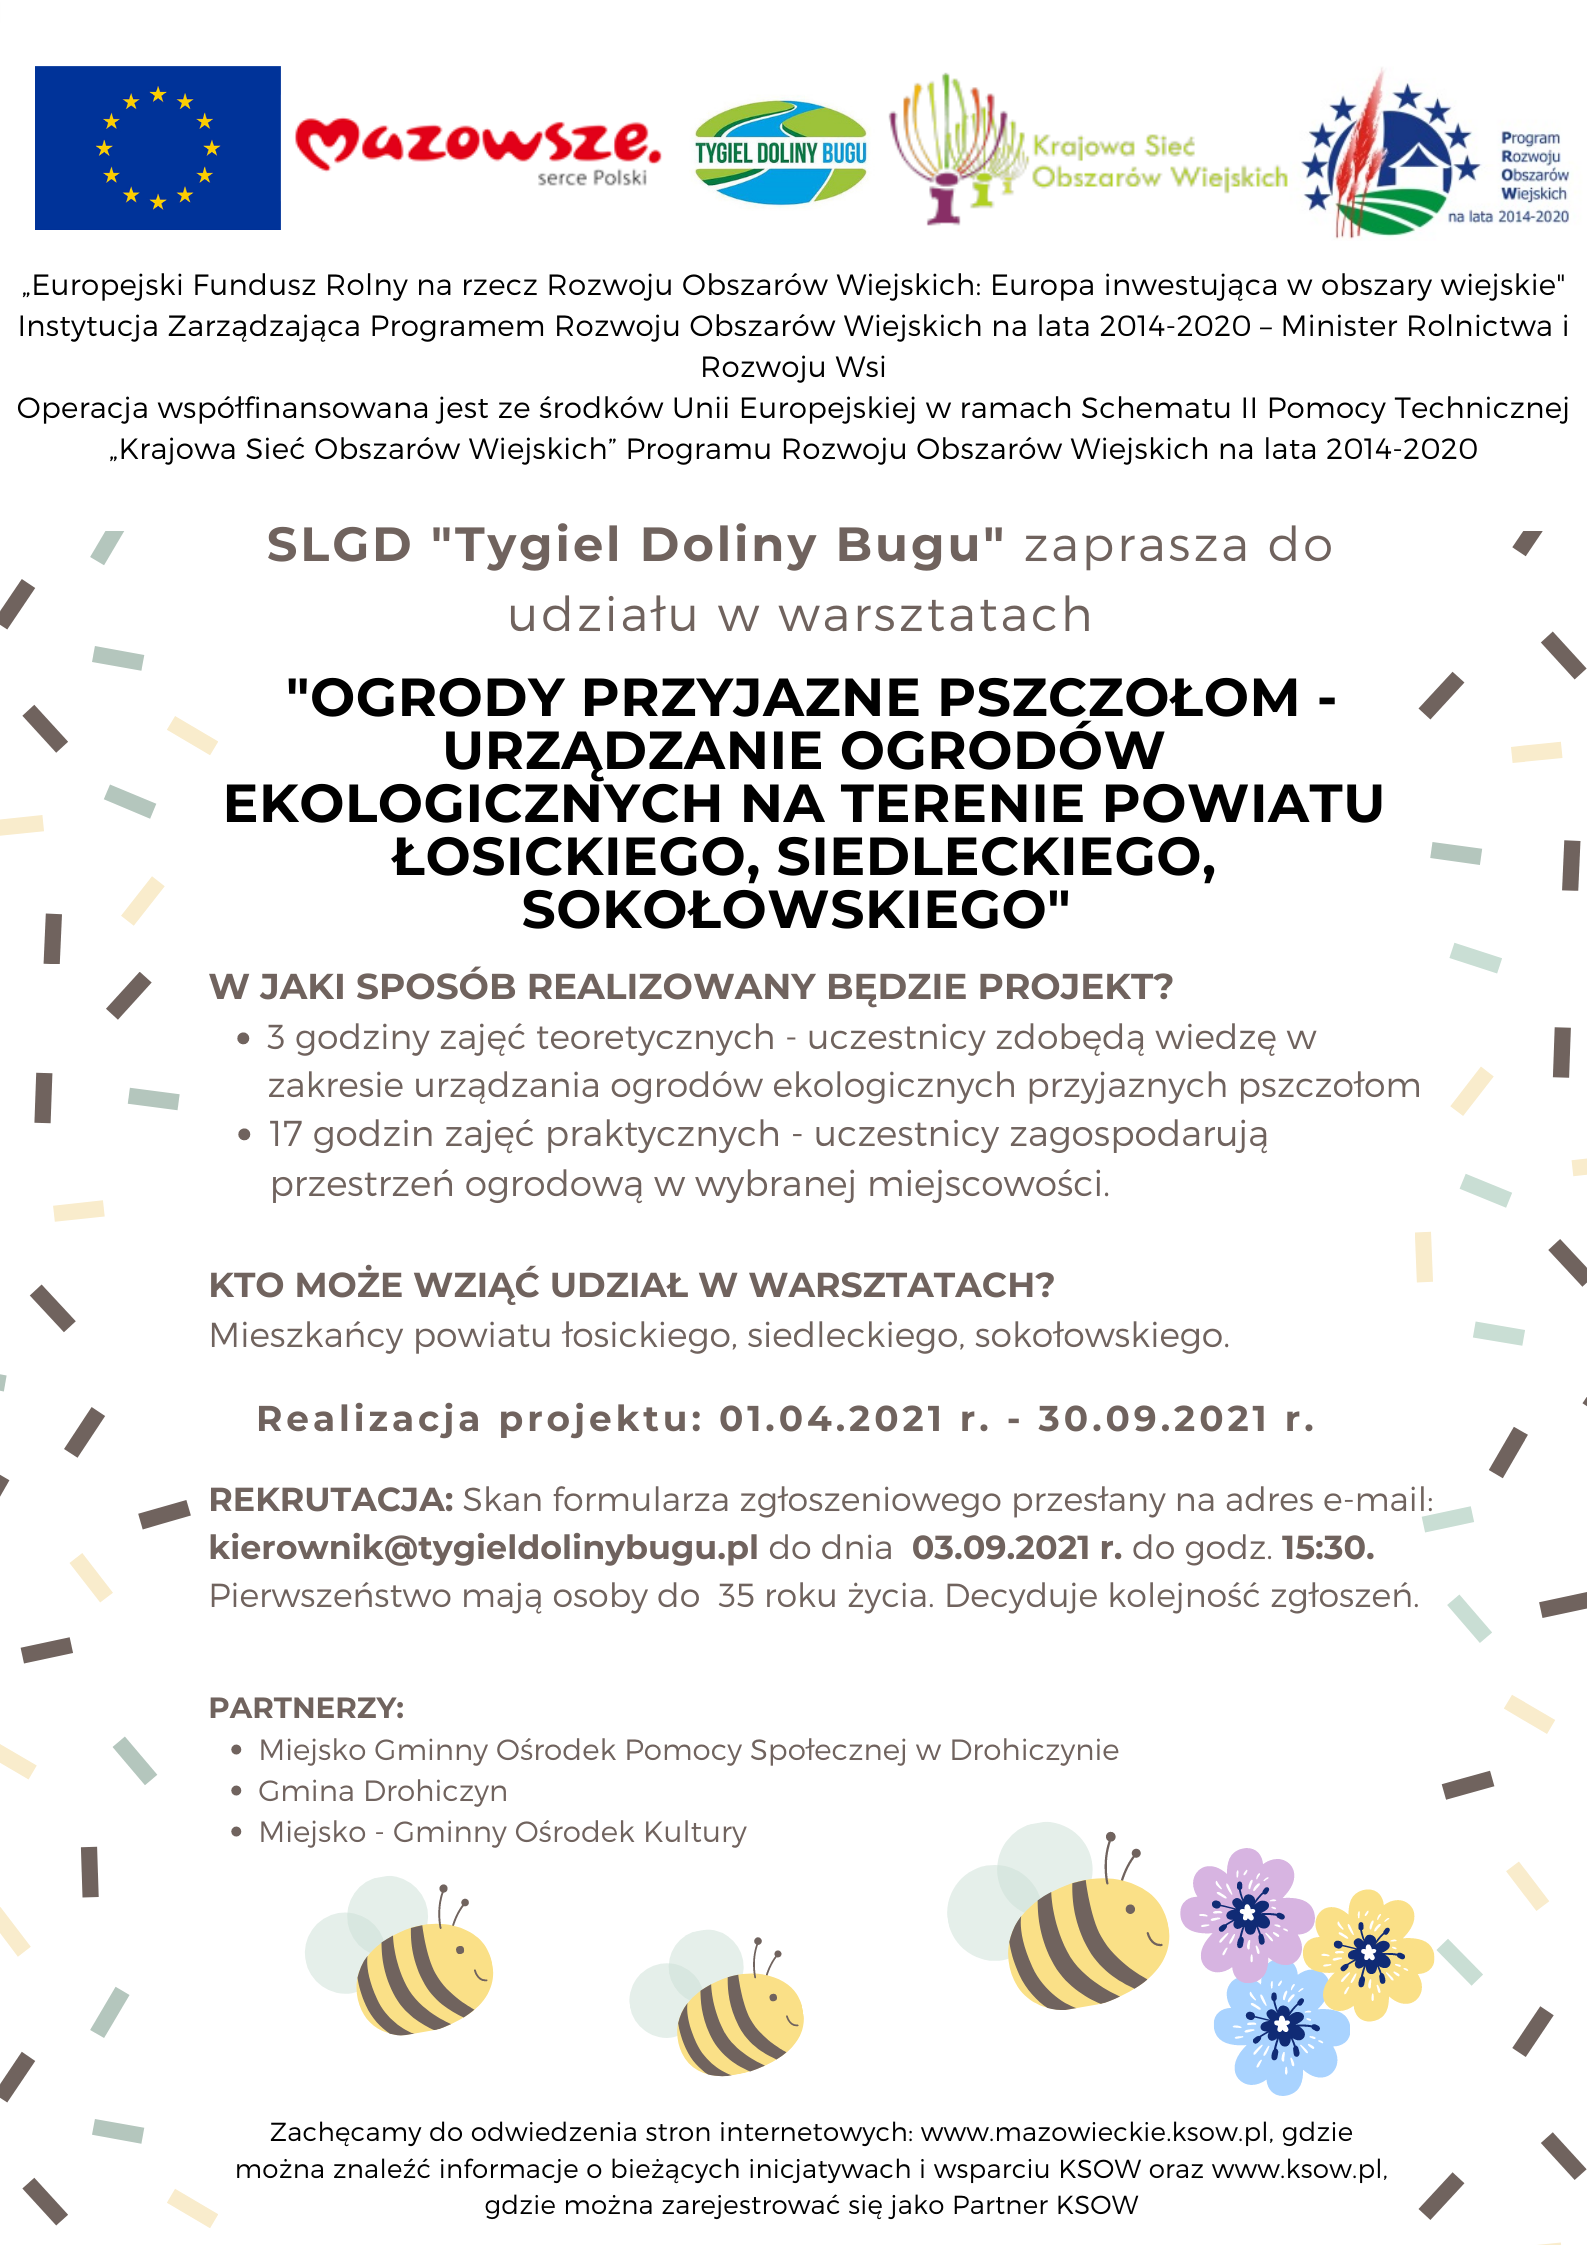 plakat promujący program "ogrody przyjazne pszczołom - urządzanie ogrodów ekologicznych na terenie powiatu Łosickiego, siedleckiego , skokołowskiego mający na celu zachęcenie mieszkańców do udziału w projekcie 